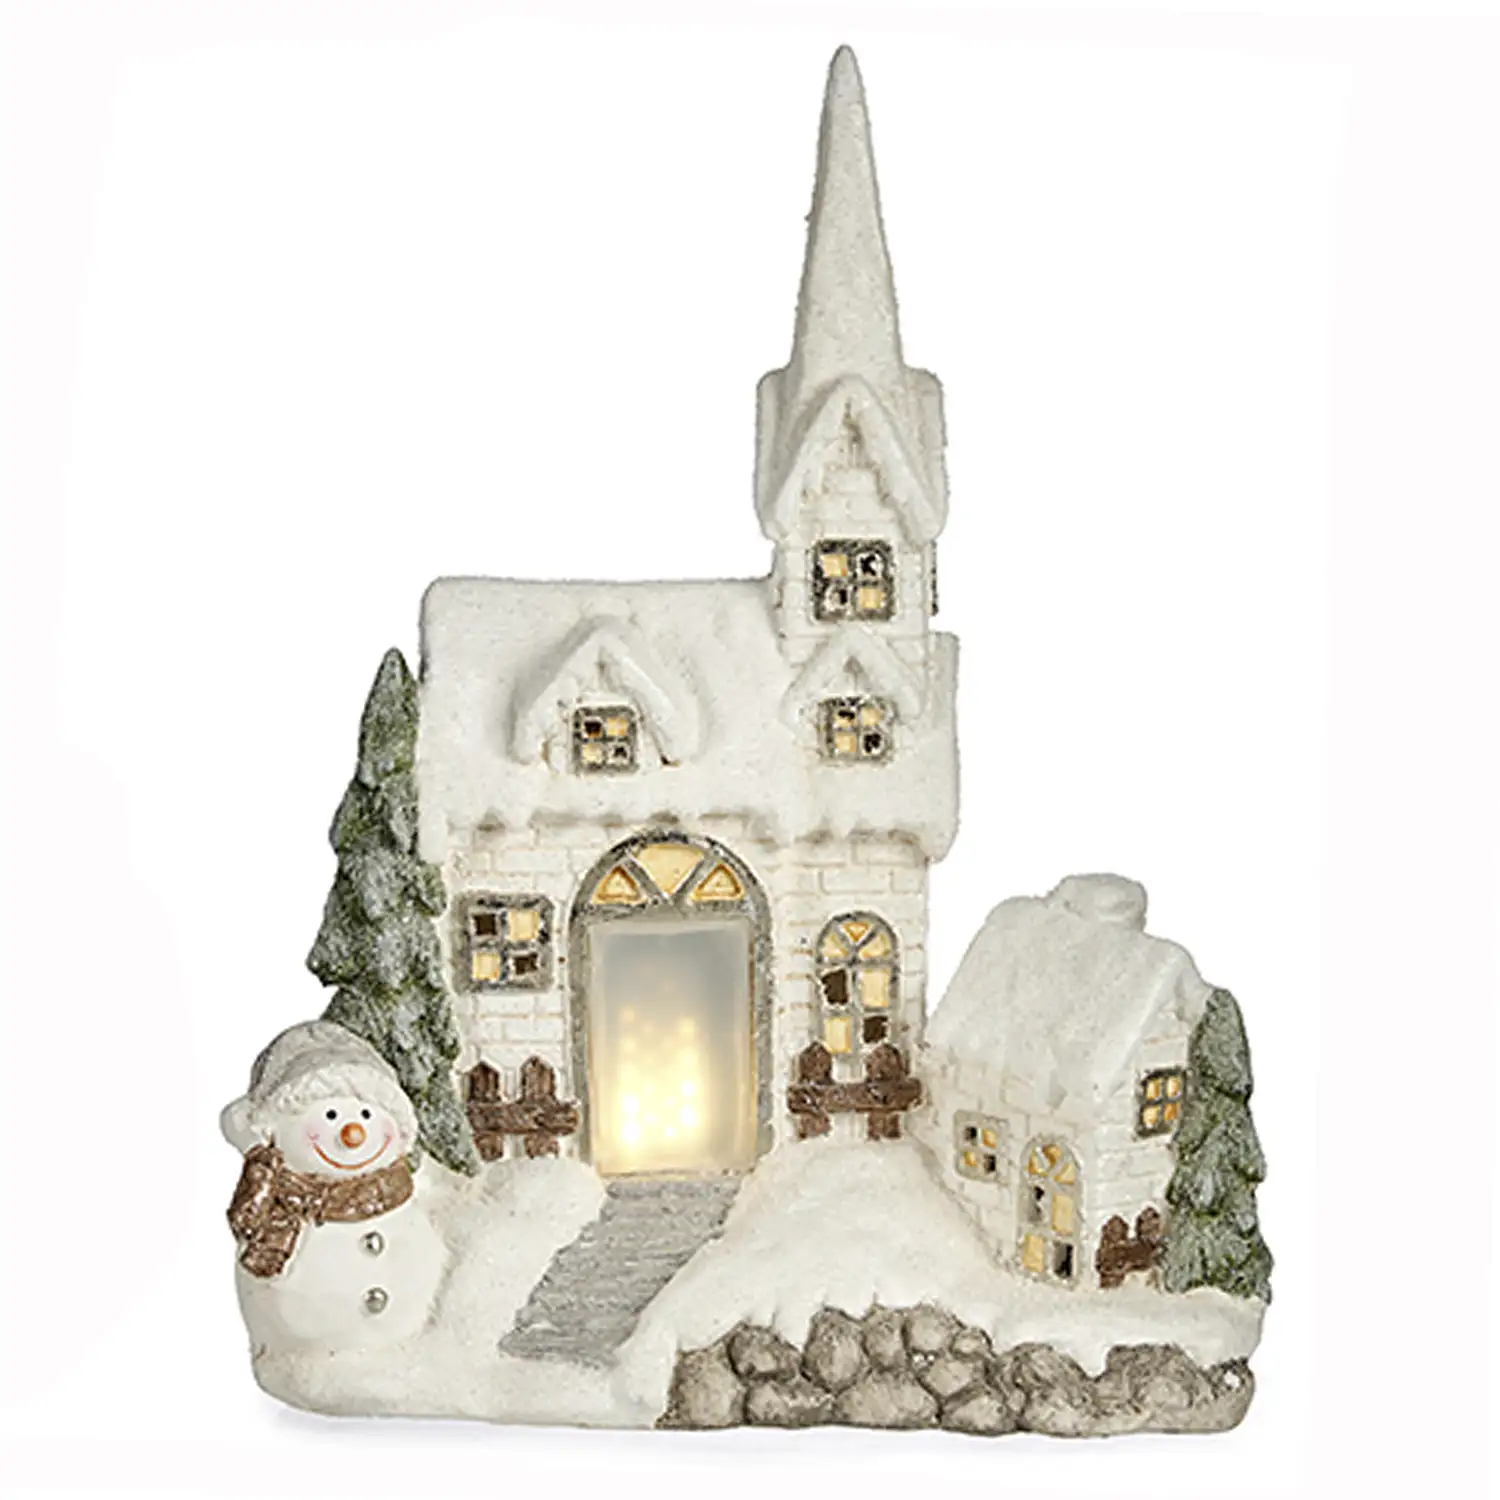 Figura de casita nevada con luz y muñeco de nieve.